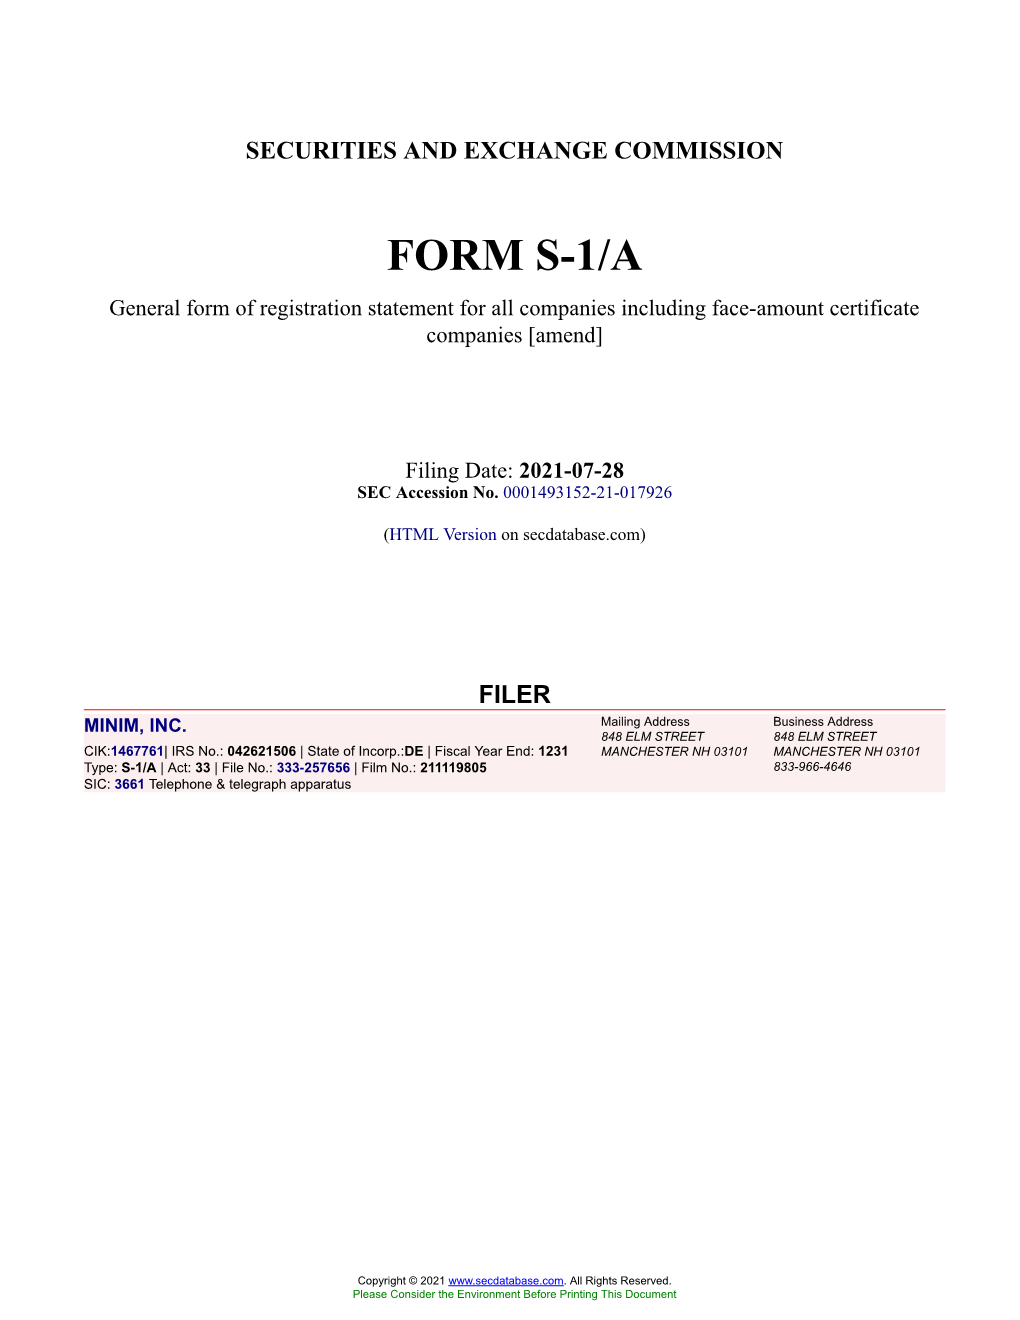 MINIM, INC. Form S-1/A Filed 2021-07-28